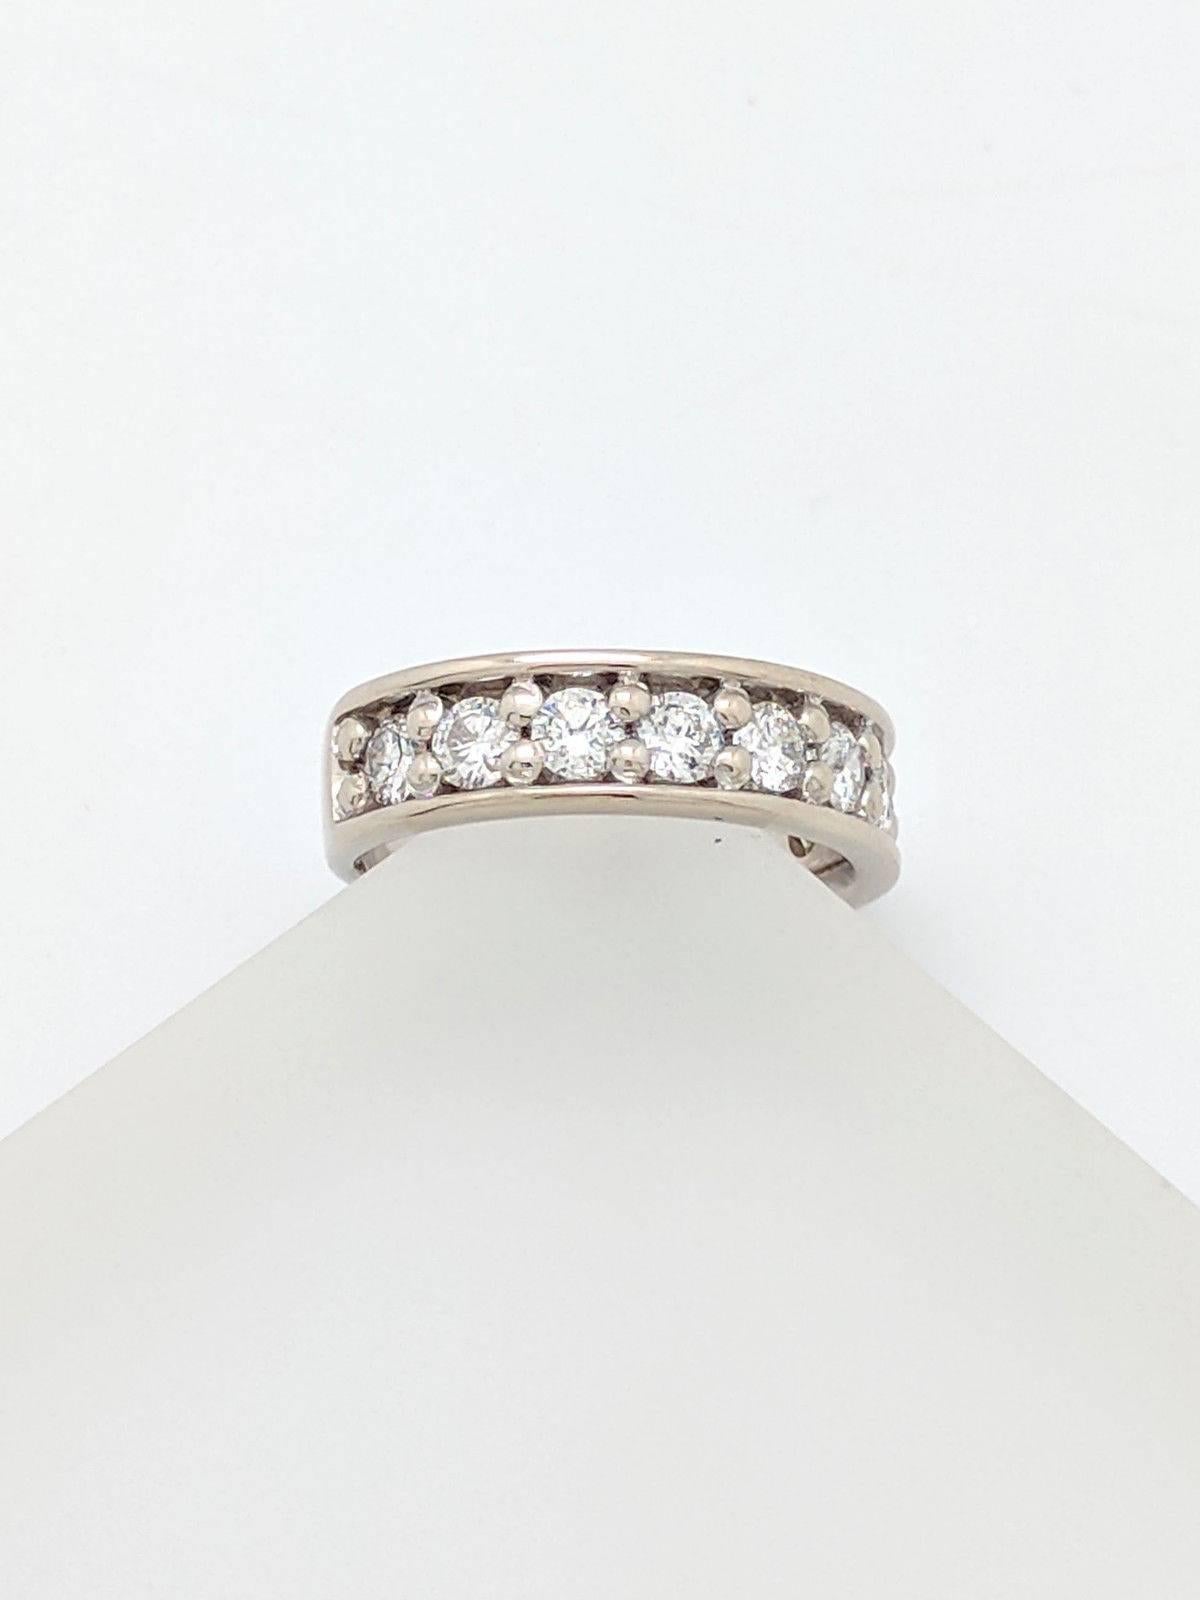 Women's or Men's 14 Karat White Gold 1 Carat Prong Set Diamond Wedding Band Ring For Sale